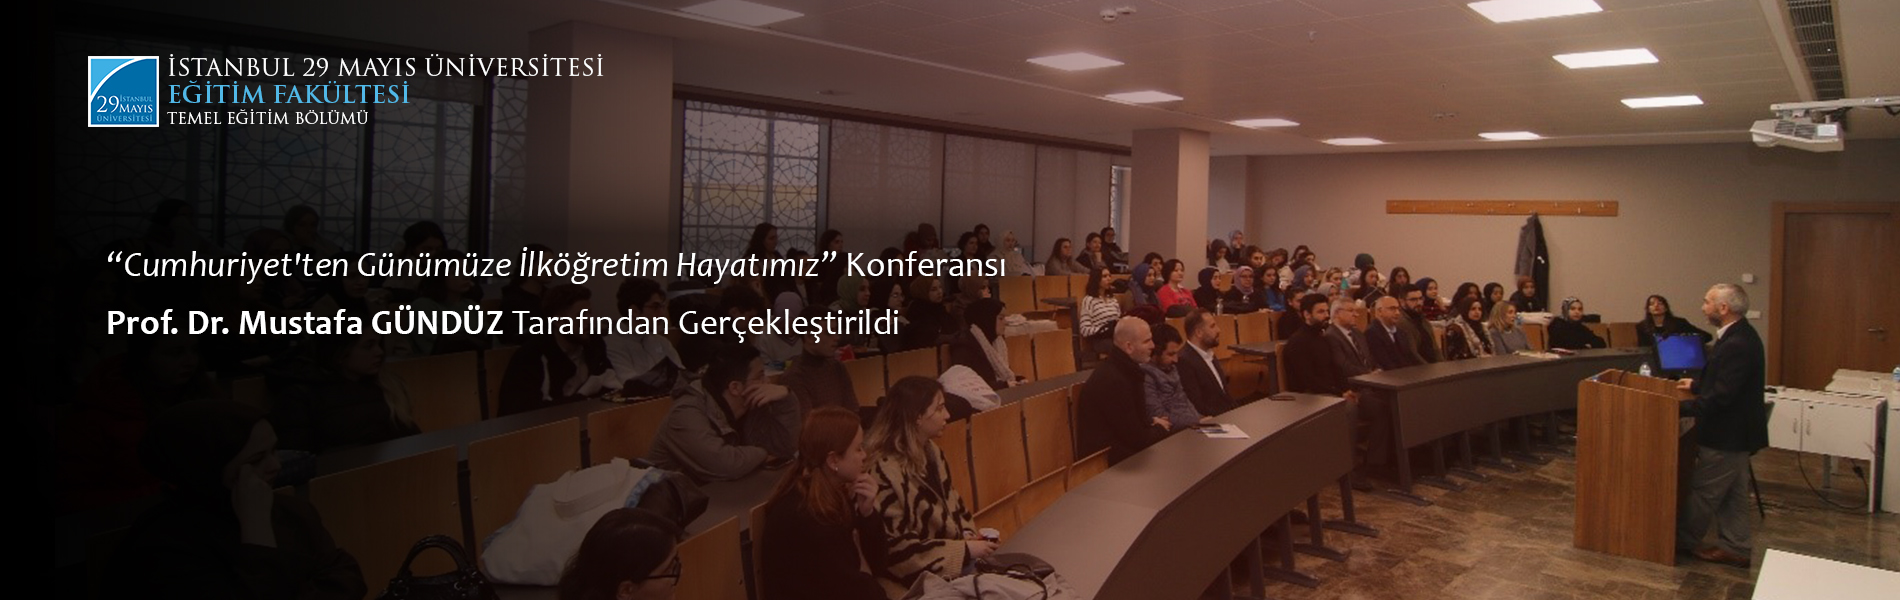 Cumhuriyet'ten Günümüze İlköğretim Hayatımız Konferansı Prof. Dr. Mustafa Gündüz Tarafından Gerçekleştirildi